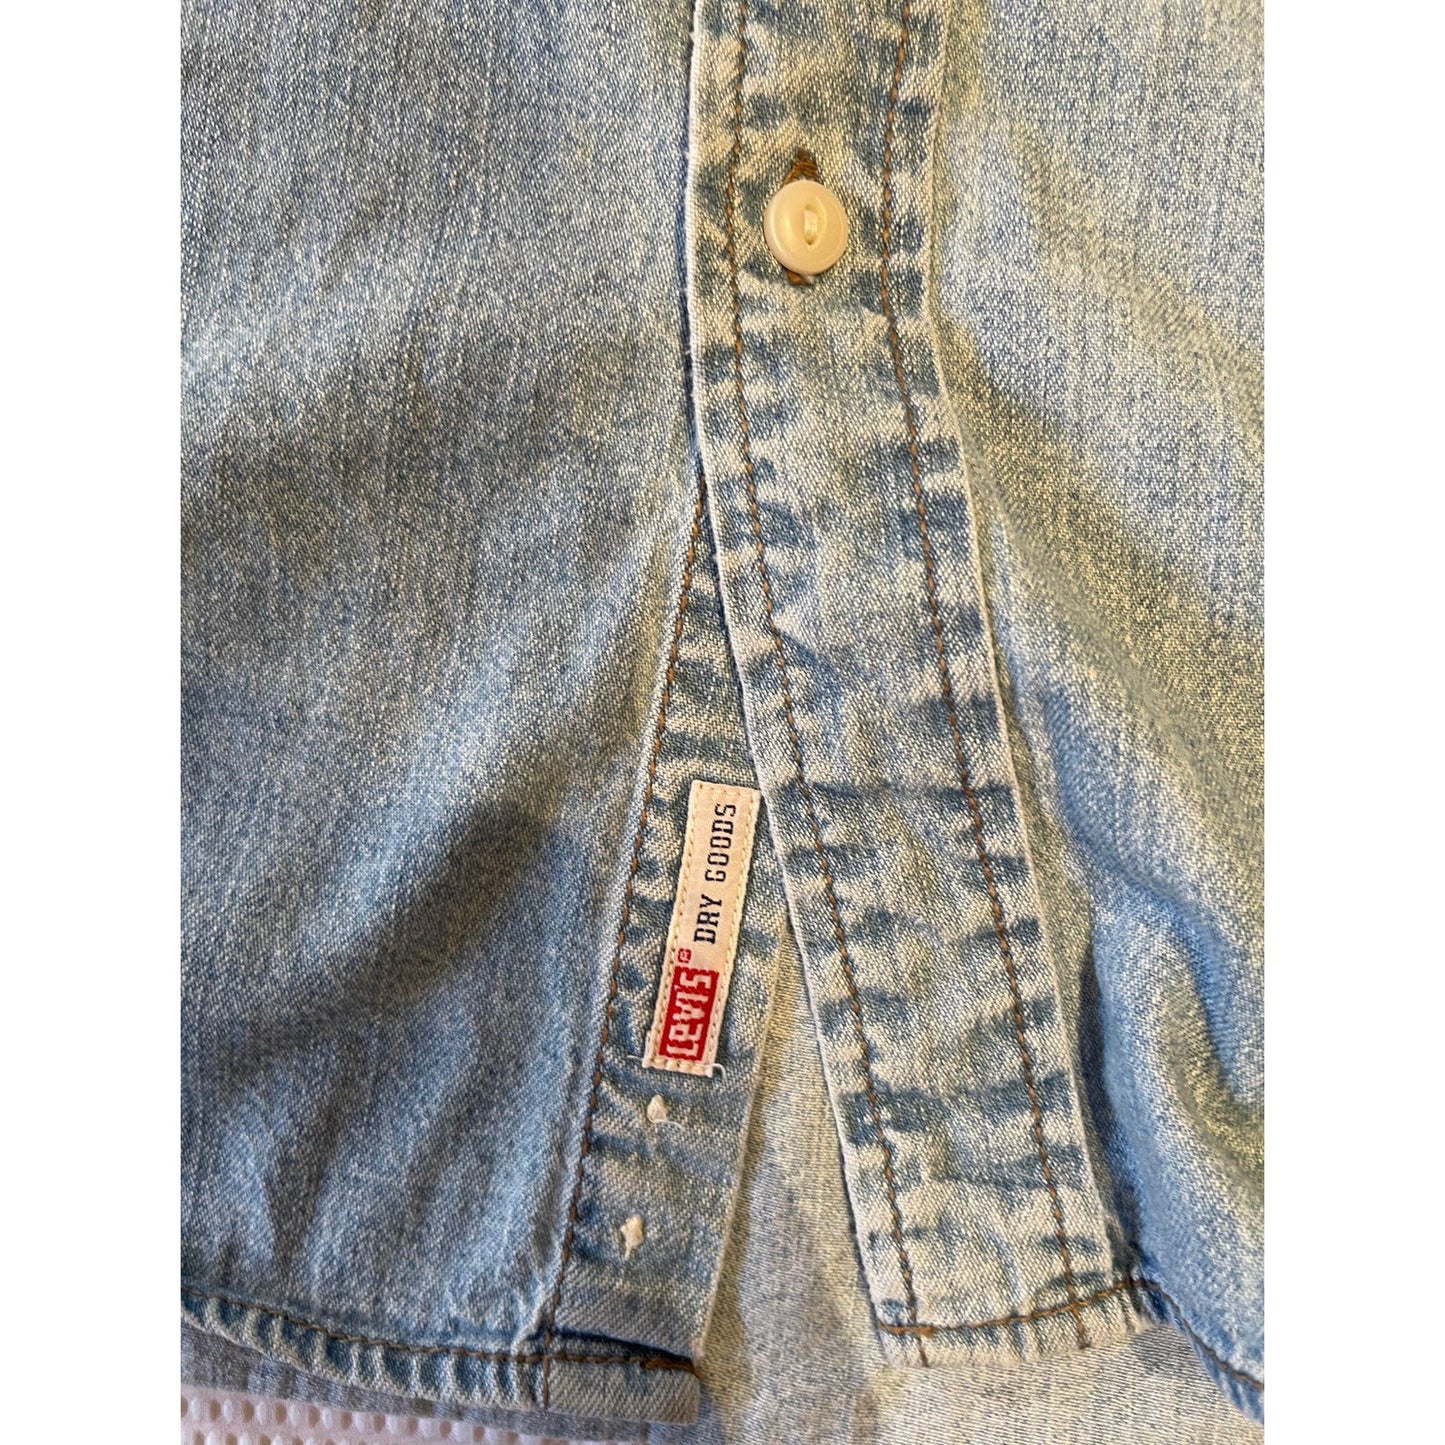 Levi's Dry Goods Vintage 90's Men's XL 100% Cotton Blue Button Down Shirt